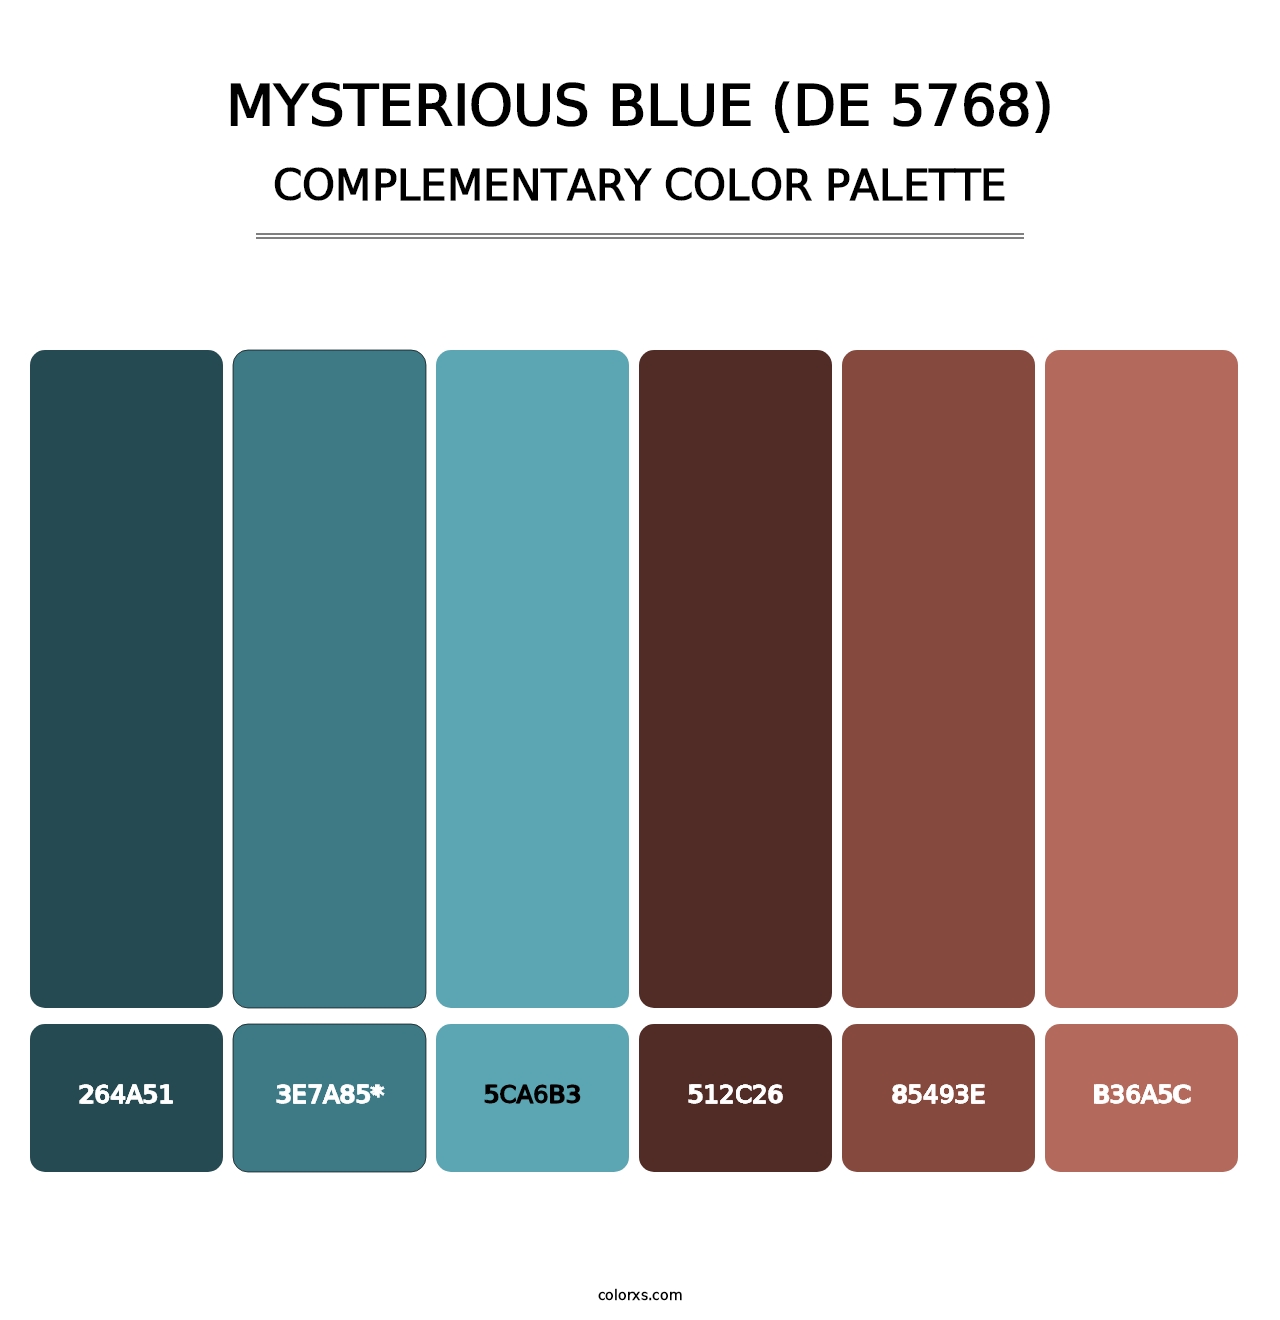 Mysterious Blue (DE 5768) - Complementary Color Palette